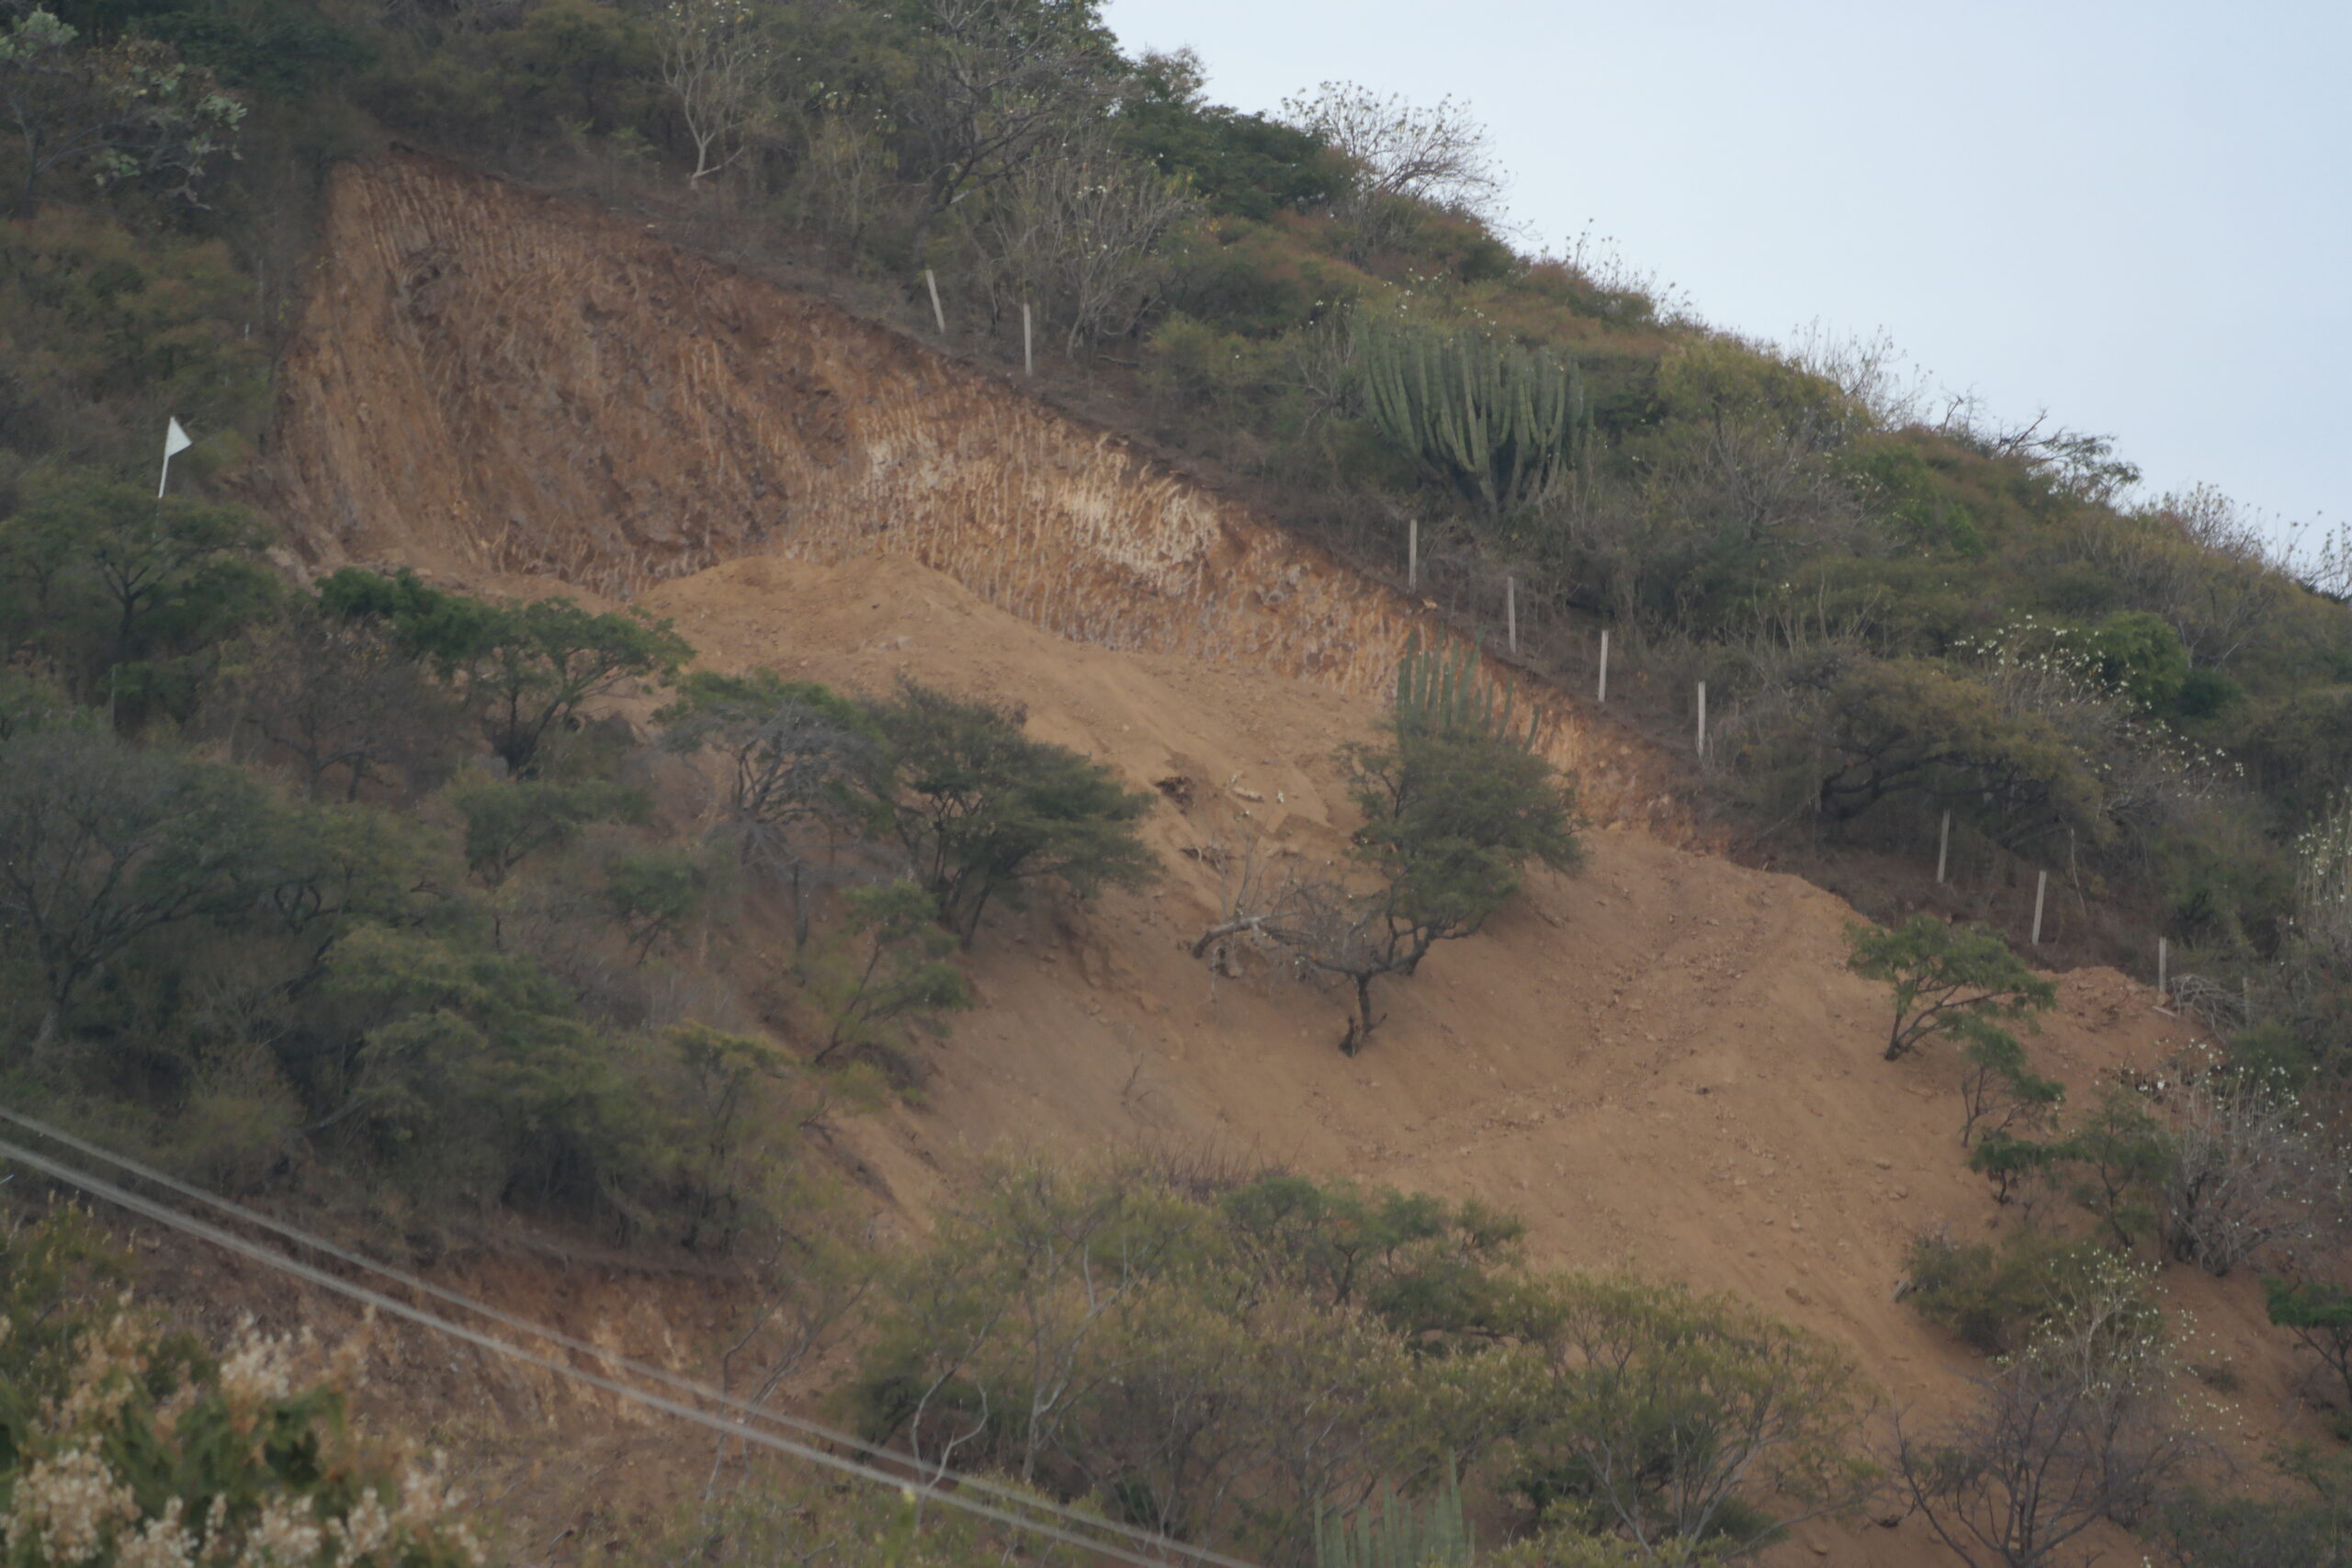 San Juan Cosalá unknown hillside excavation risks a landslide